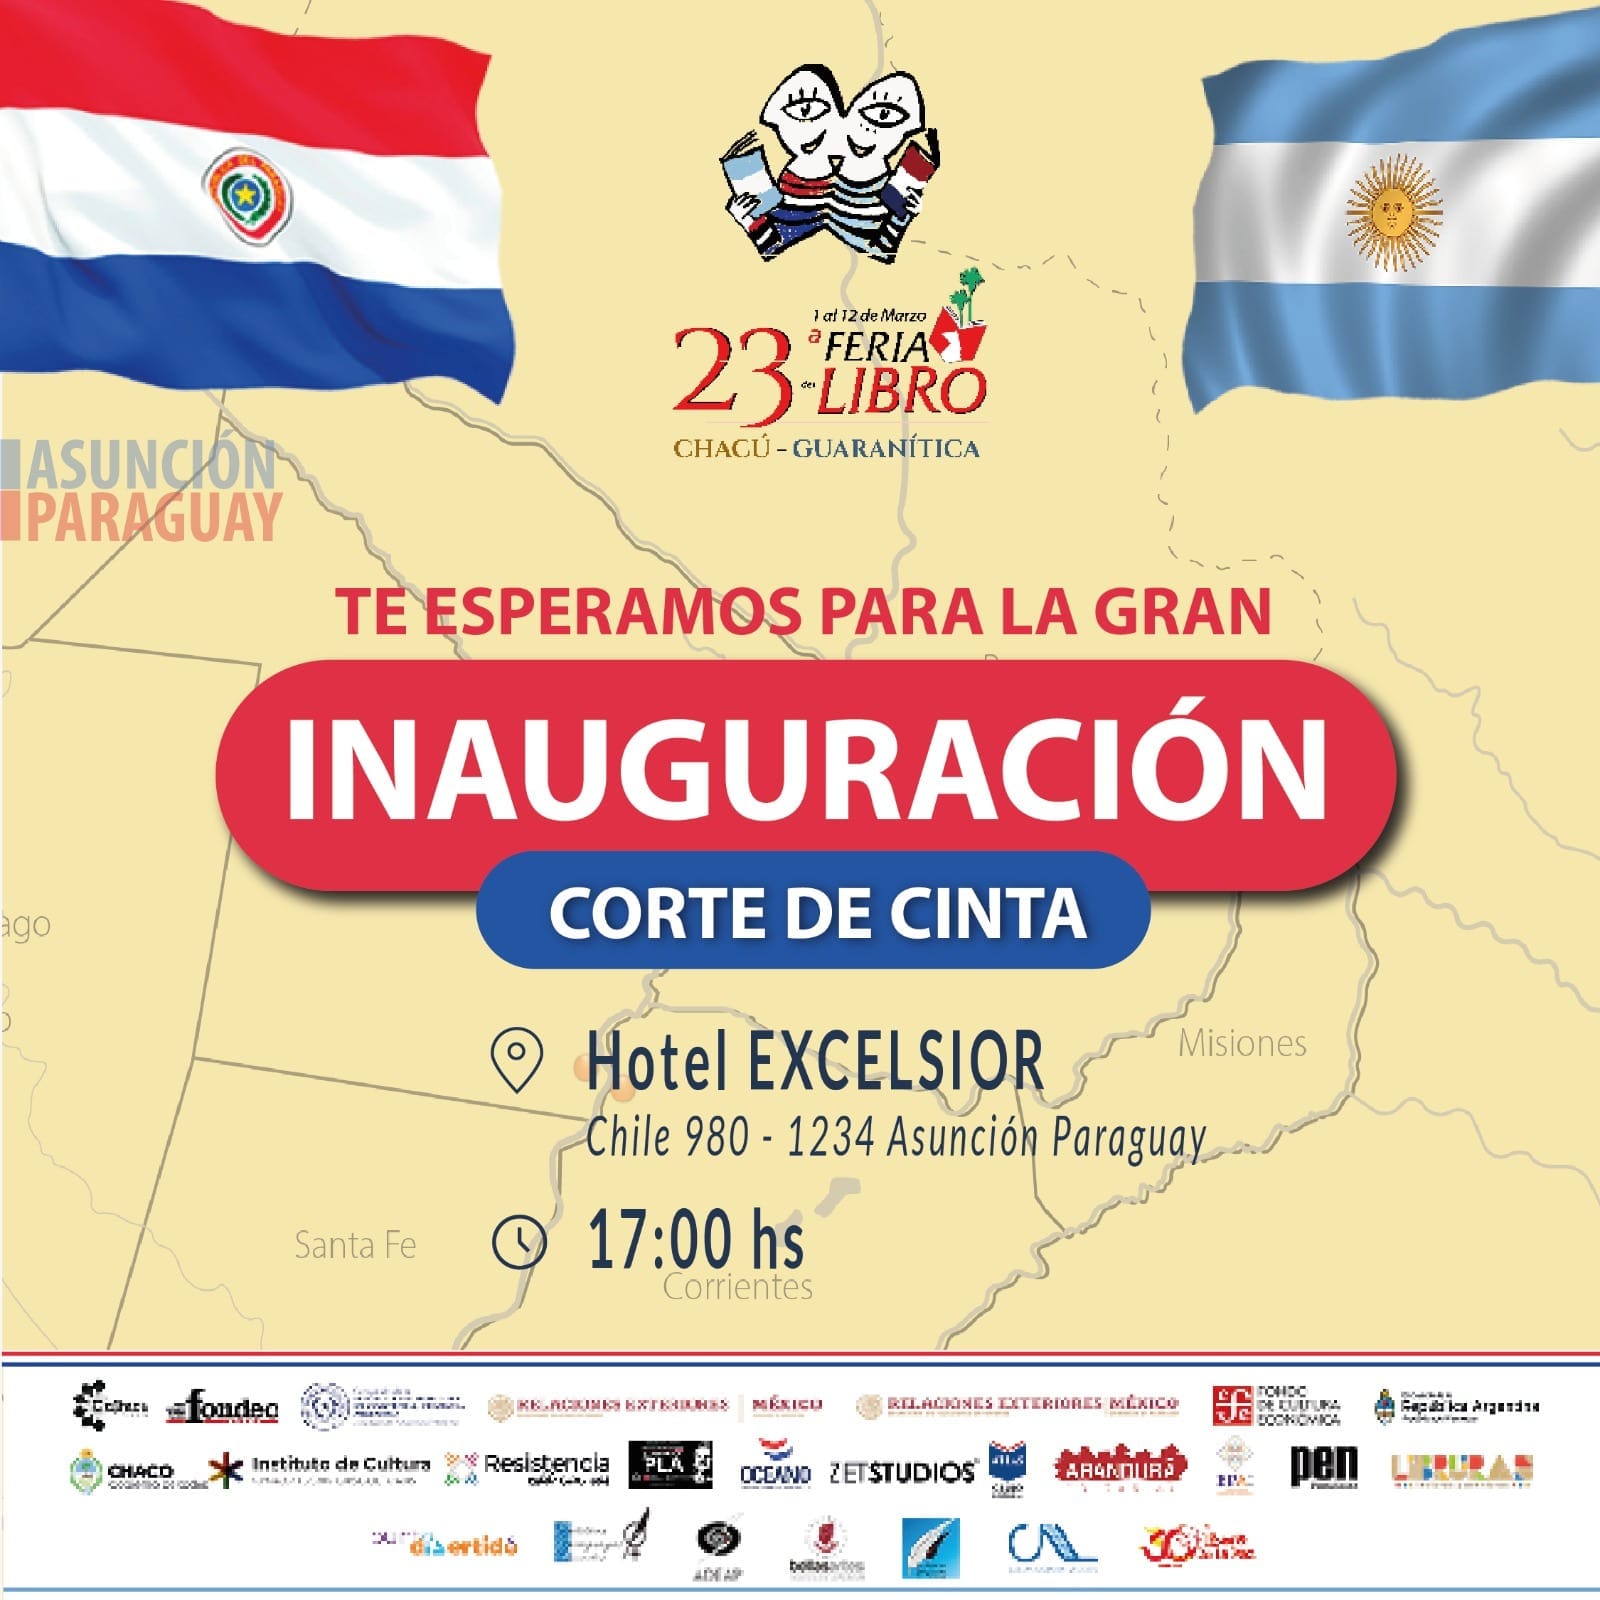 Hoy inicia la 23° edición de la Feria del Libro Chacú-Guaranítica imagen